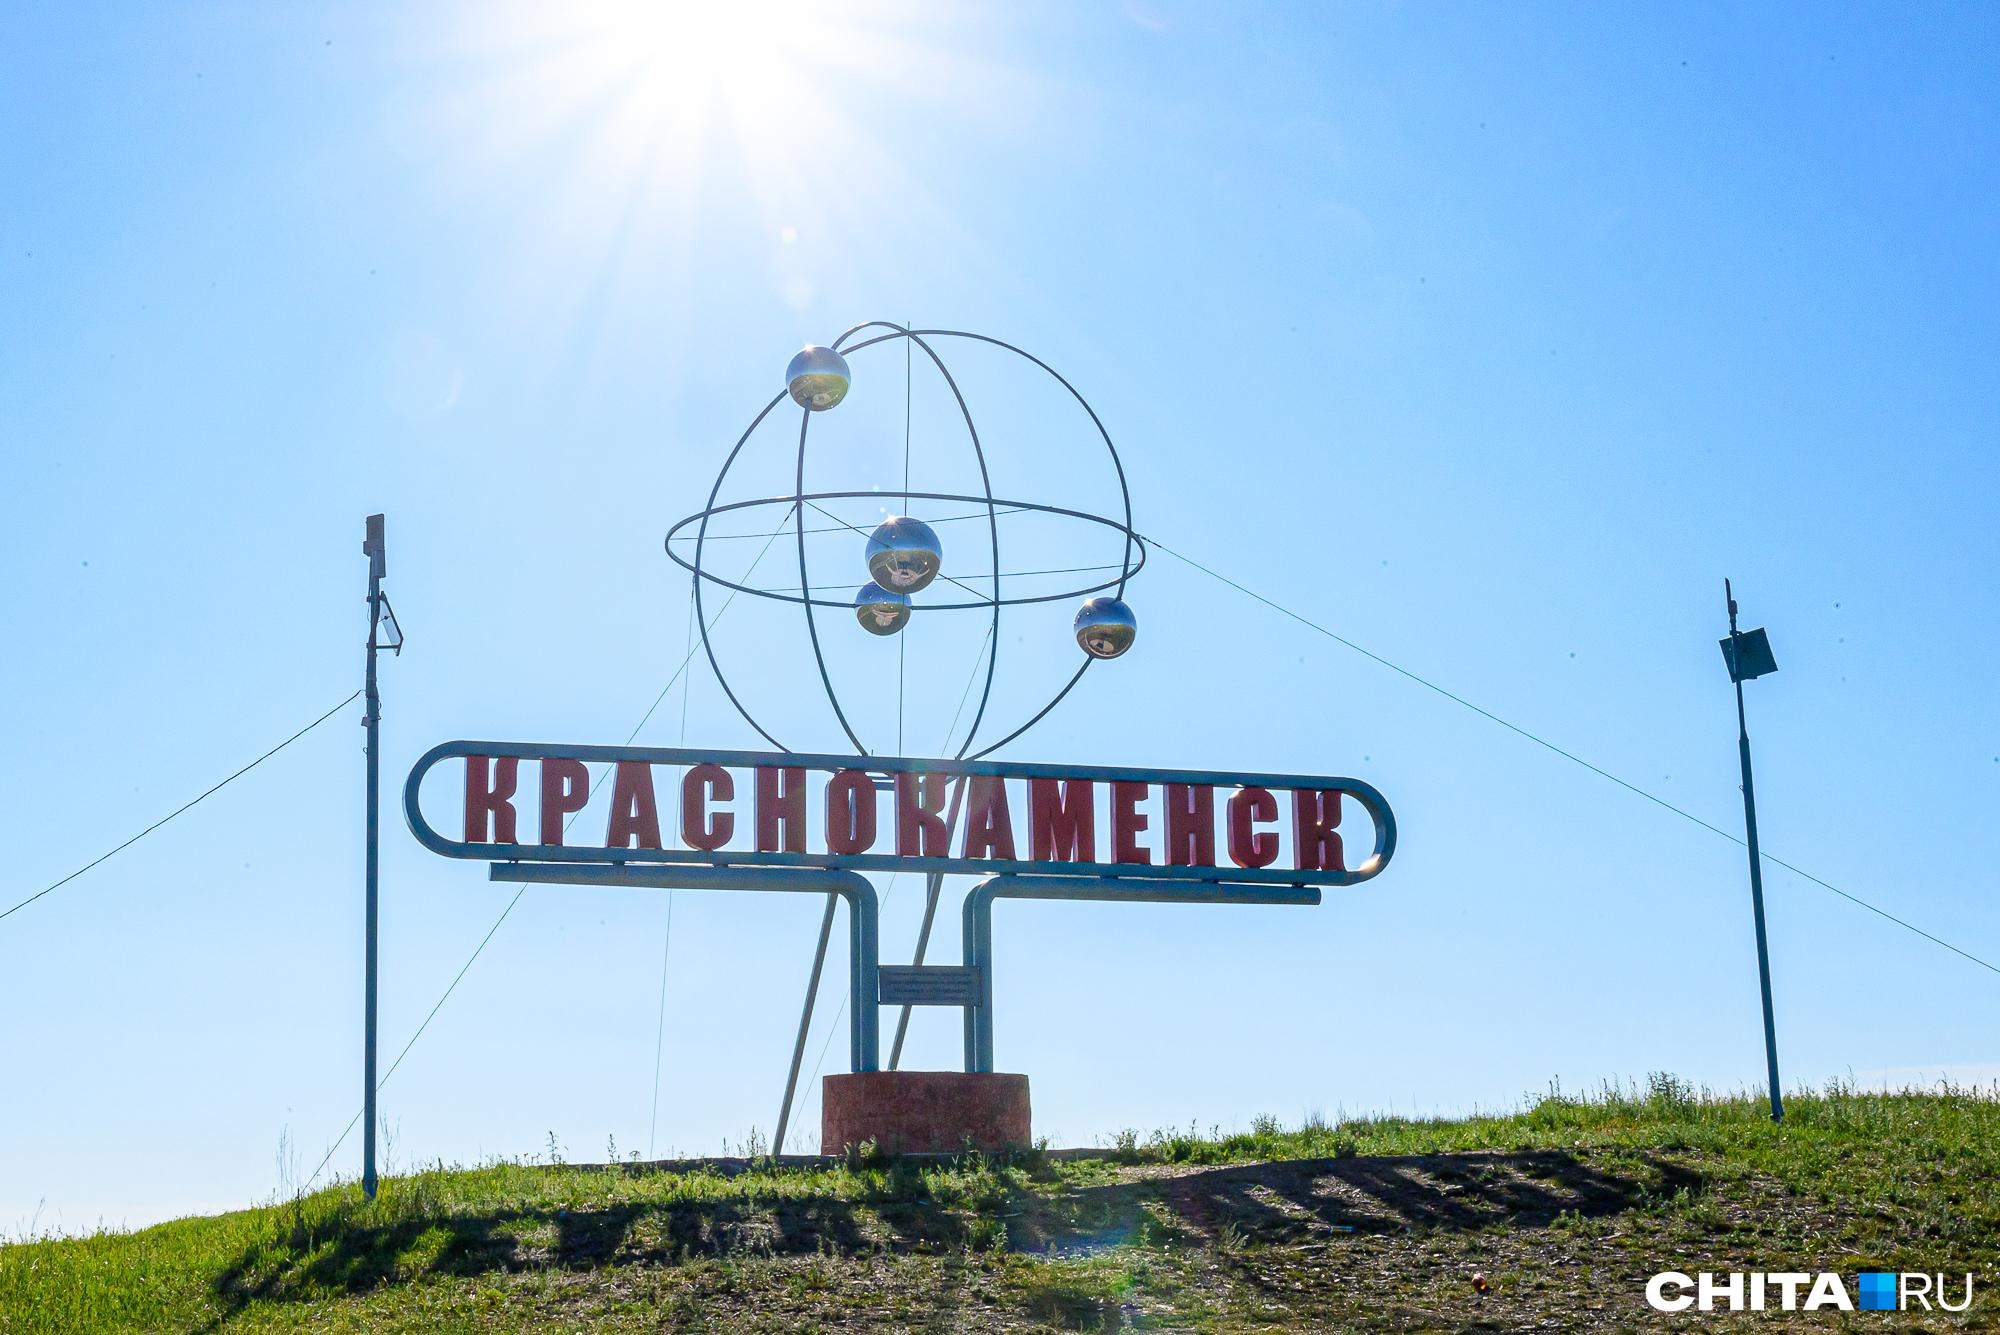 Суд в Краснокаменске обязал власти восстановить автобусное сообщение